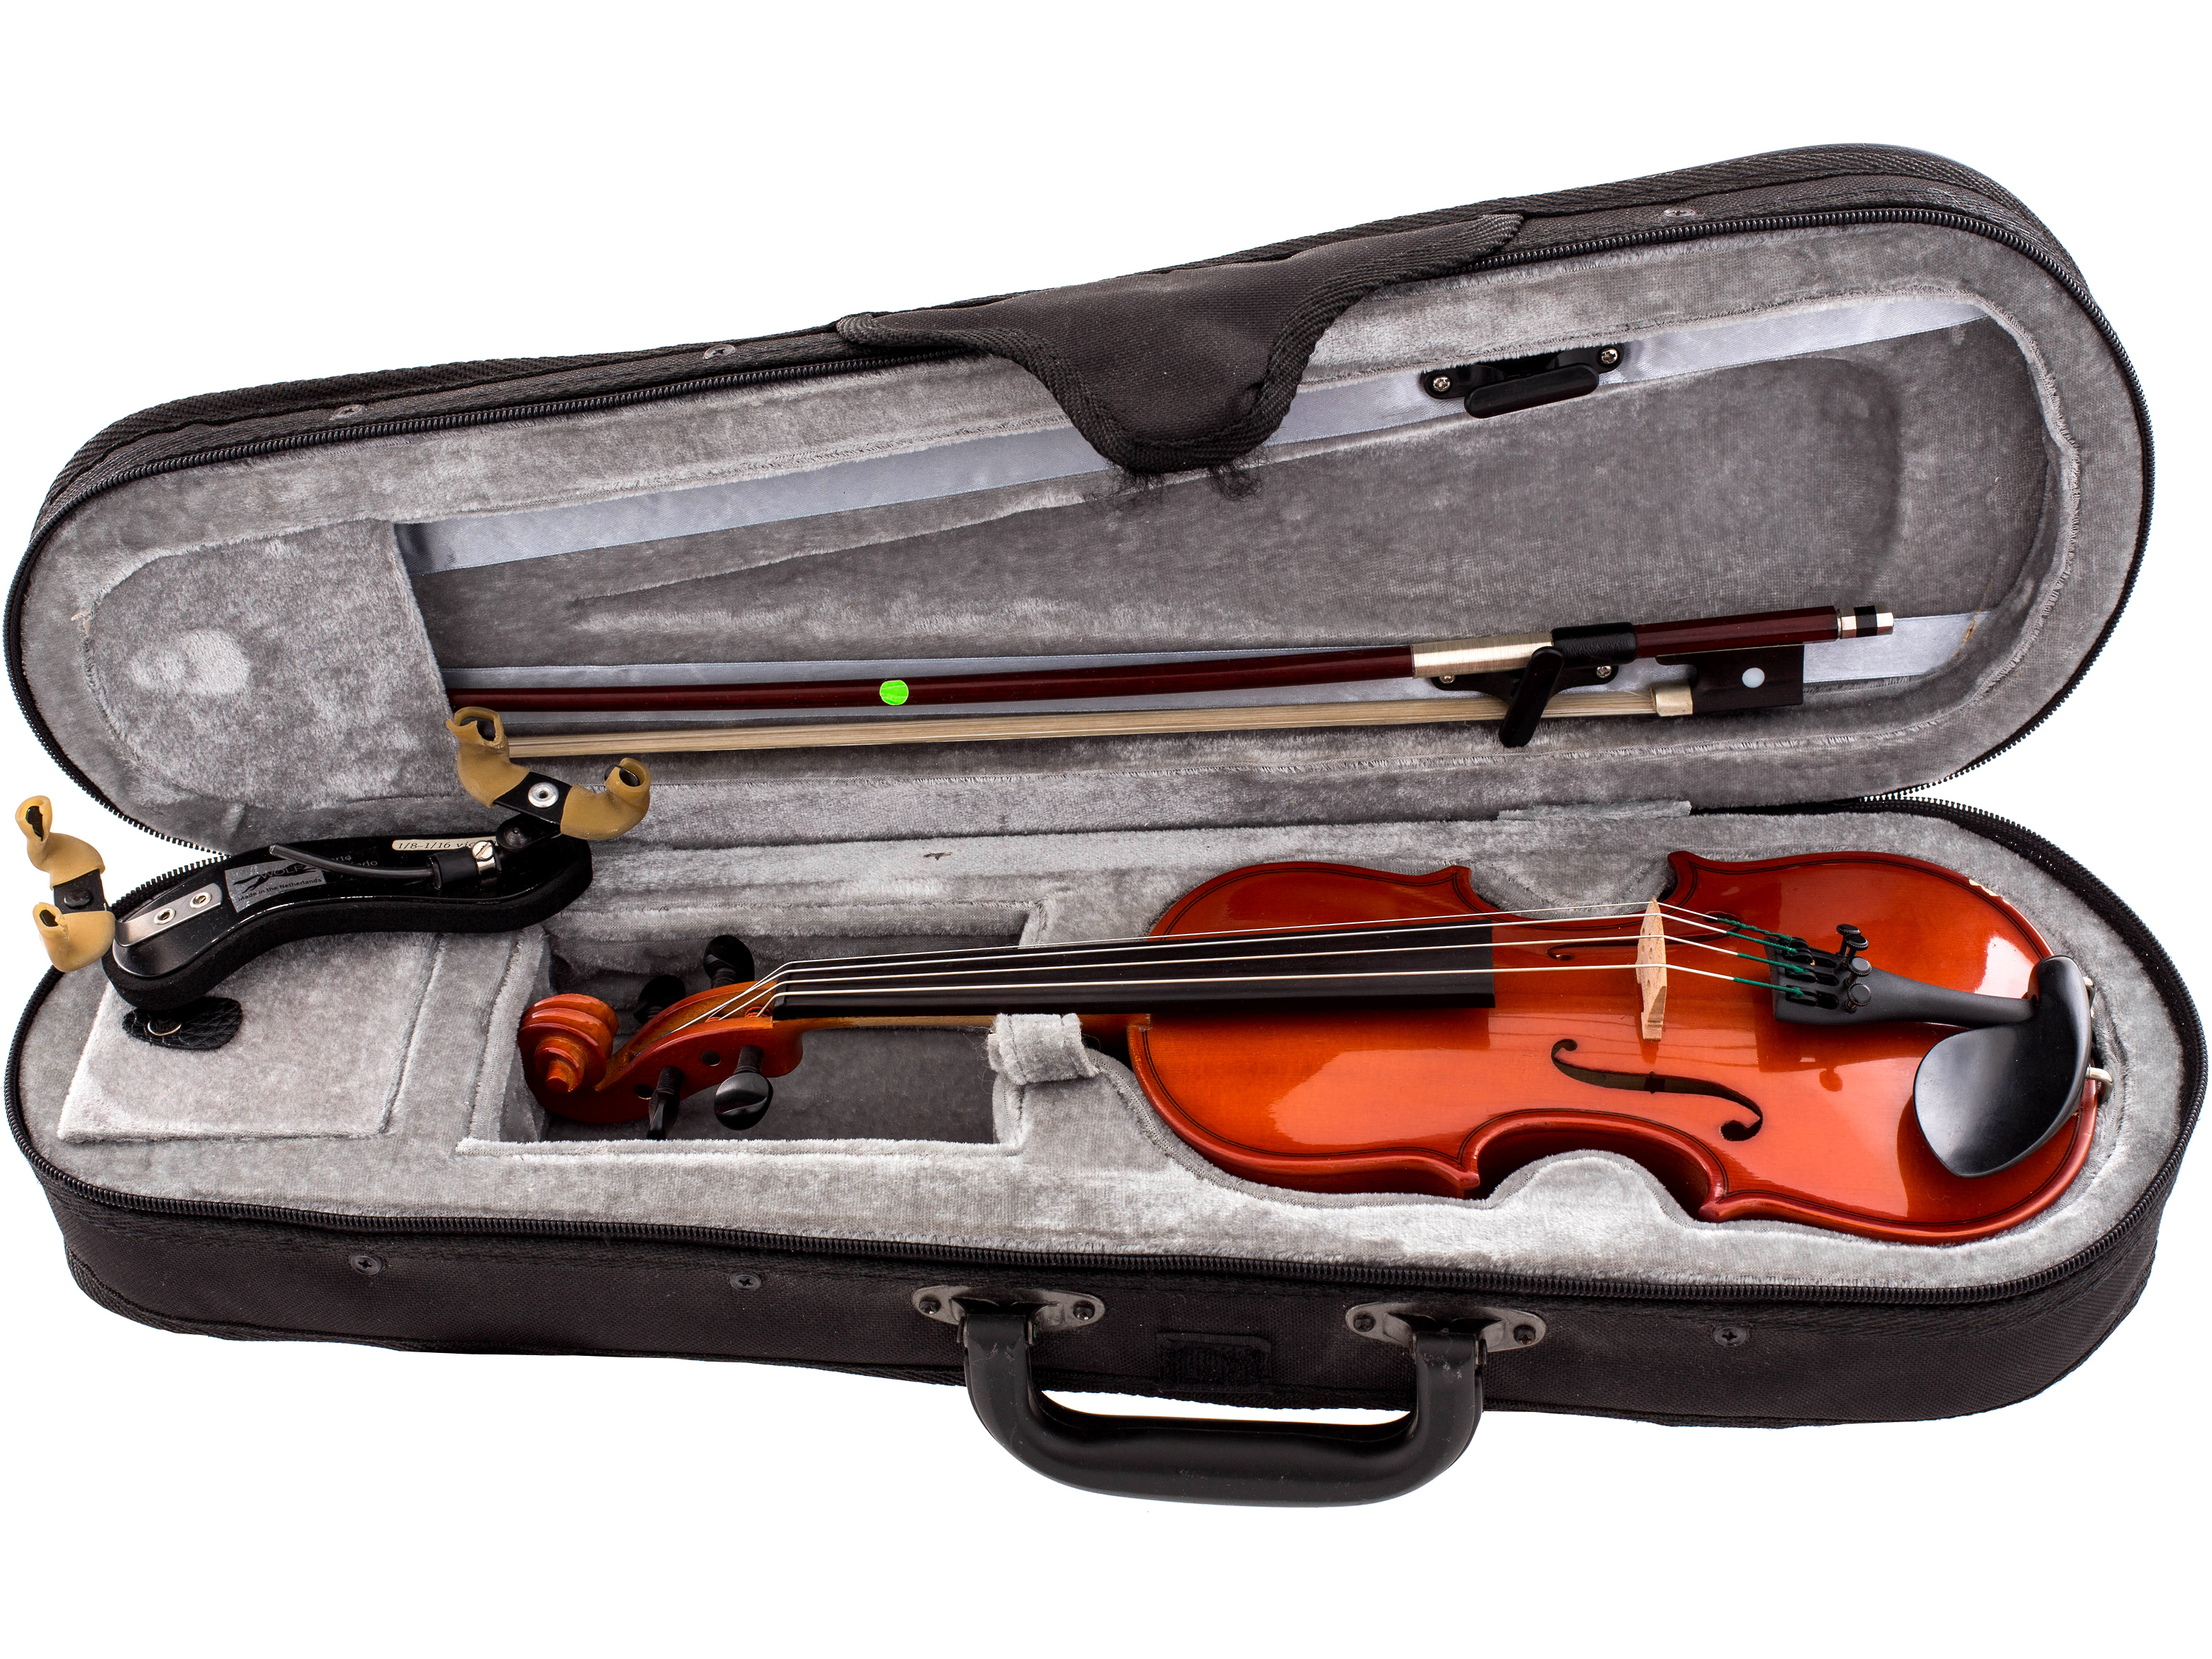 Gewa Allegro Violin-Set 1/16 10 Jahre aus Miete